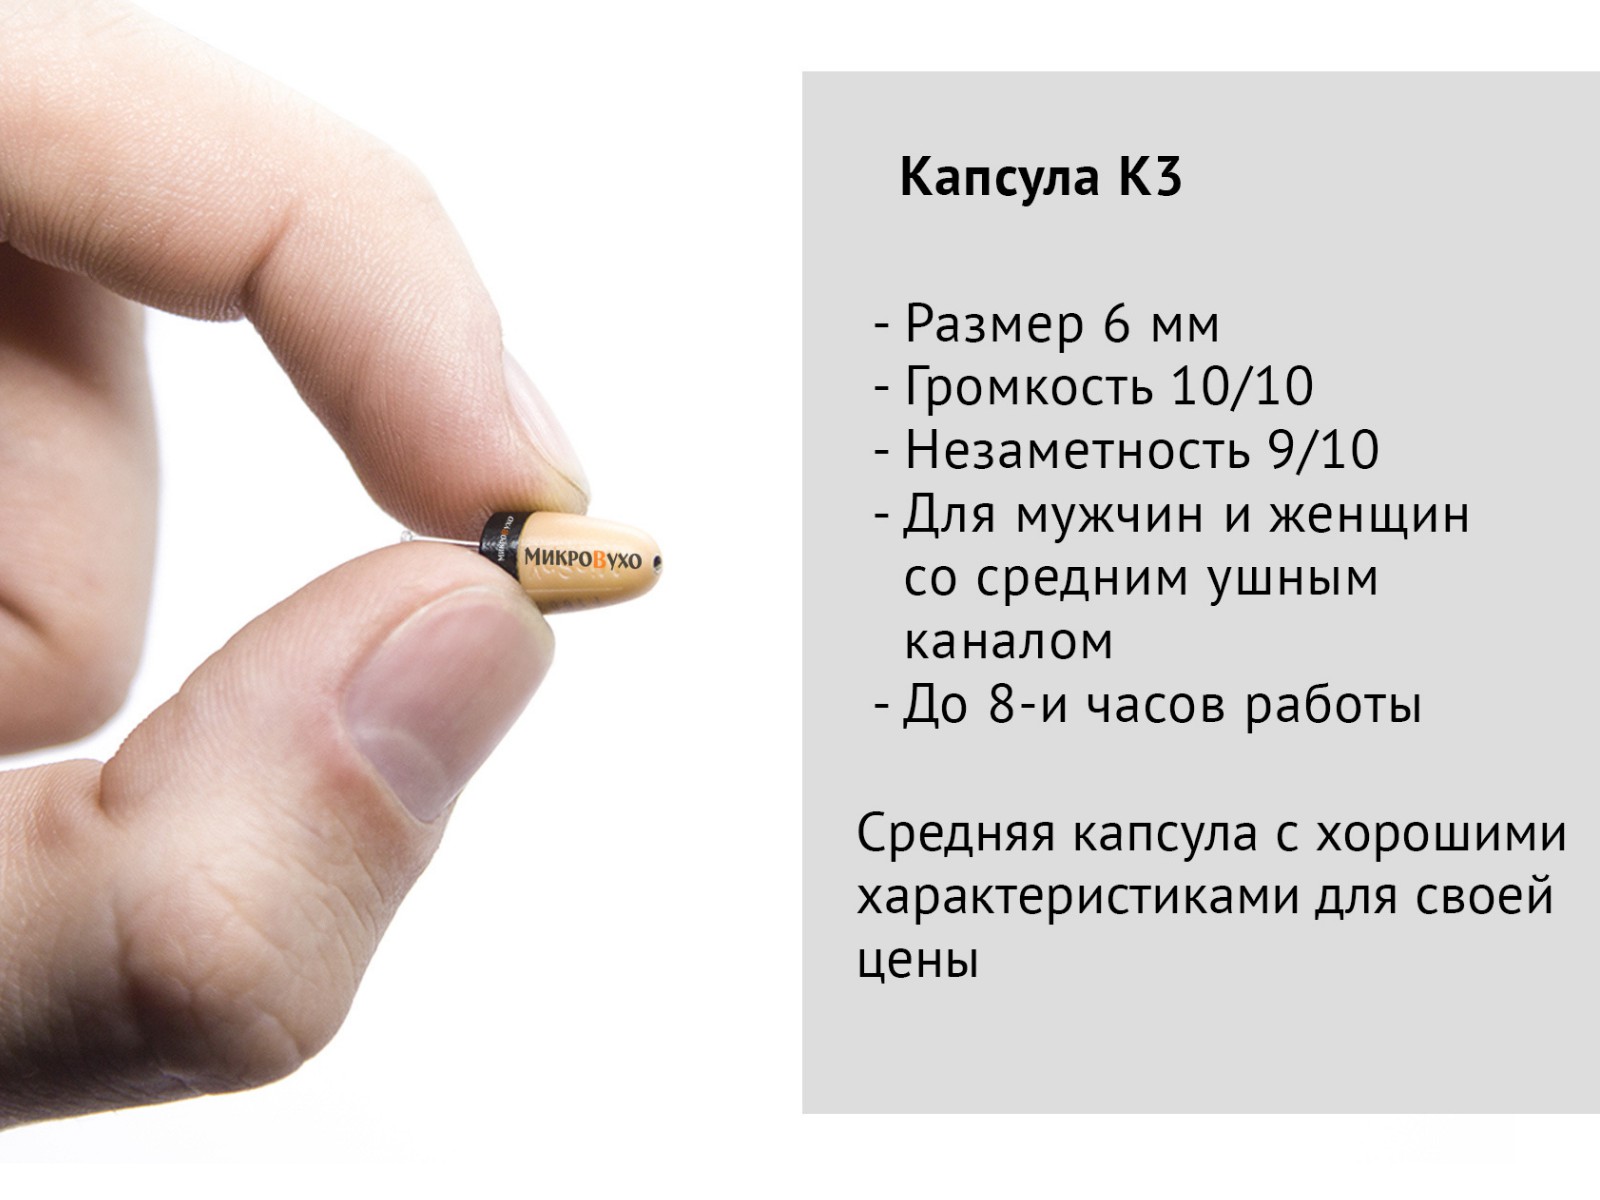 Гарнитура Bluetooth Plantronics с капсульным микронаушником K3 6 мм - изображение 9